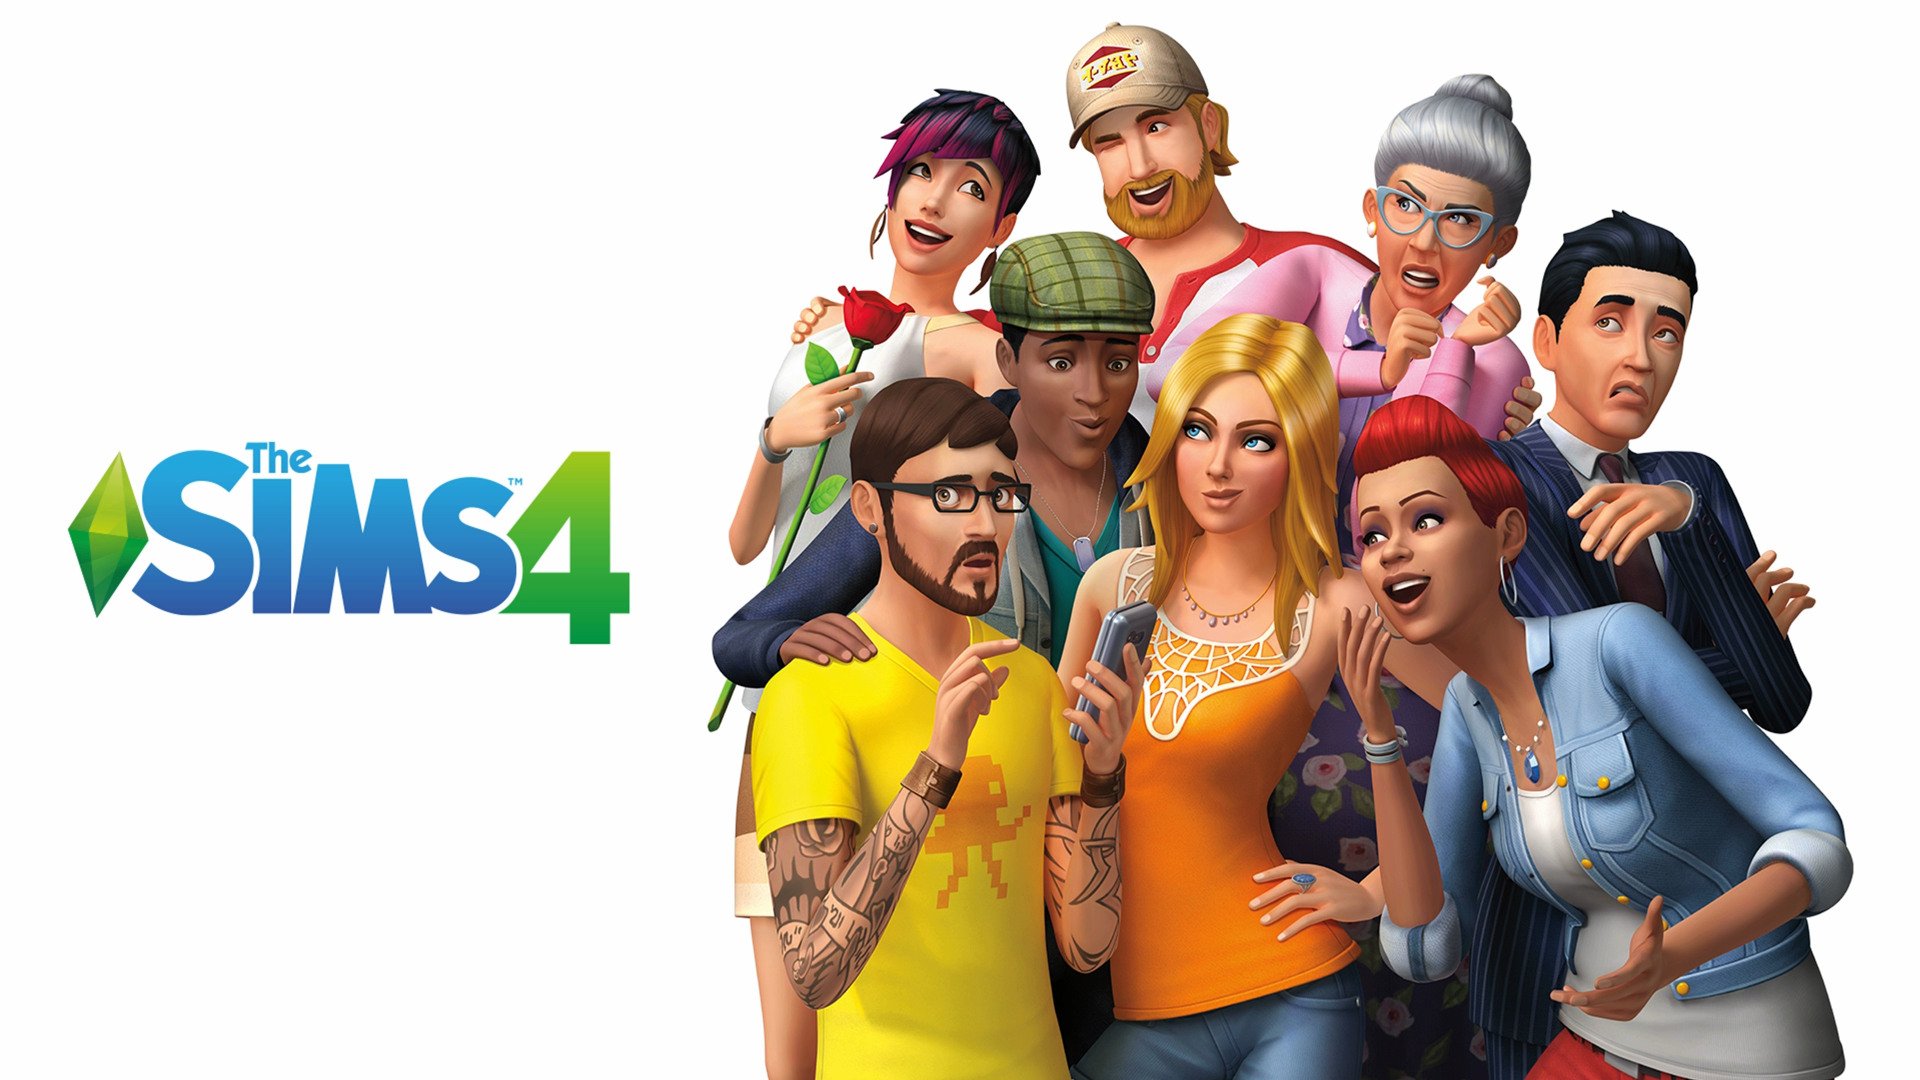 The-Sims-4-Xbox-One-main_0.jpg